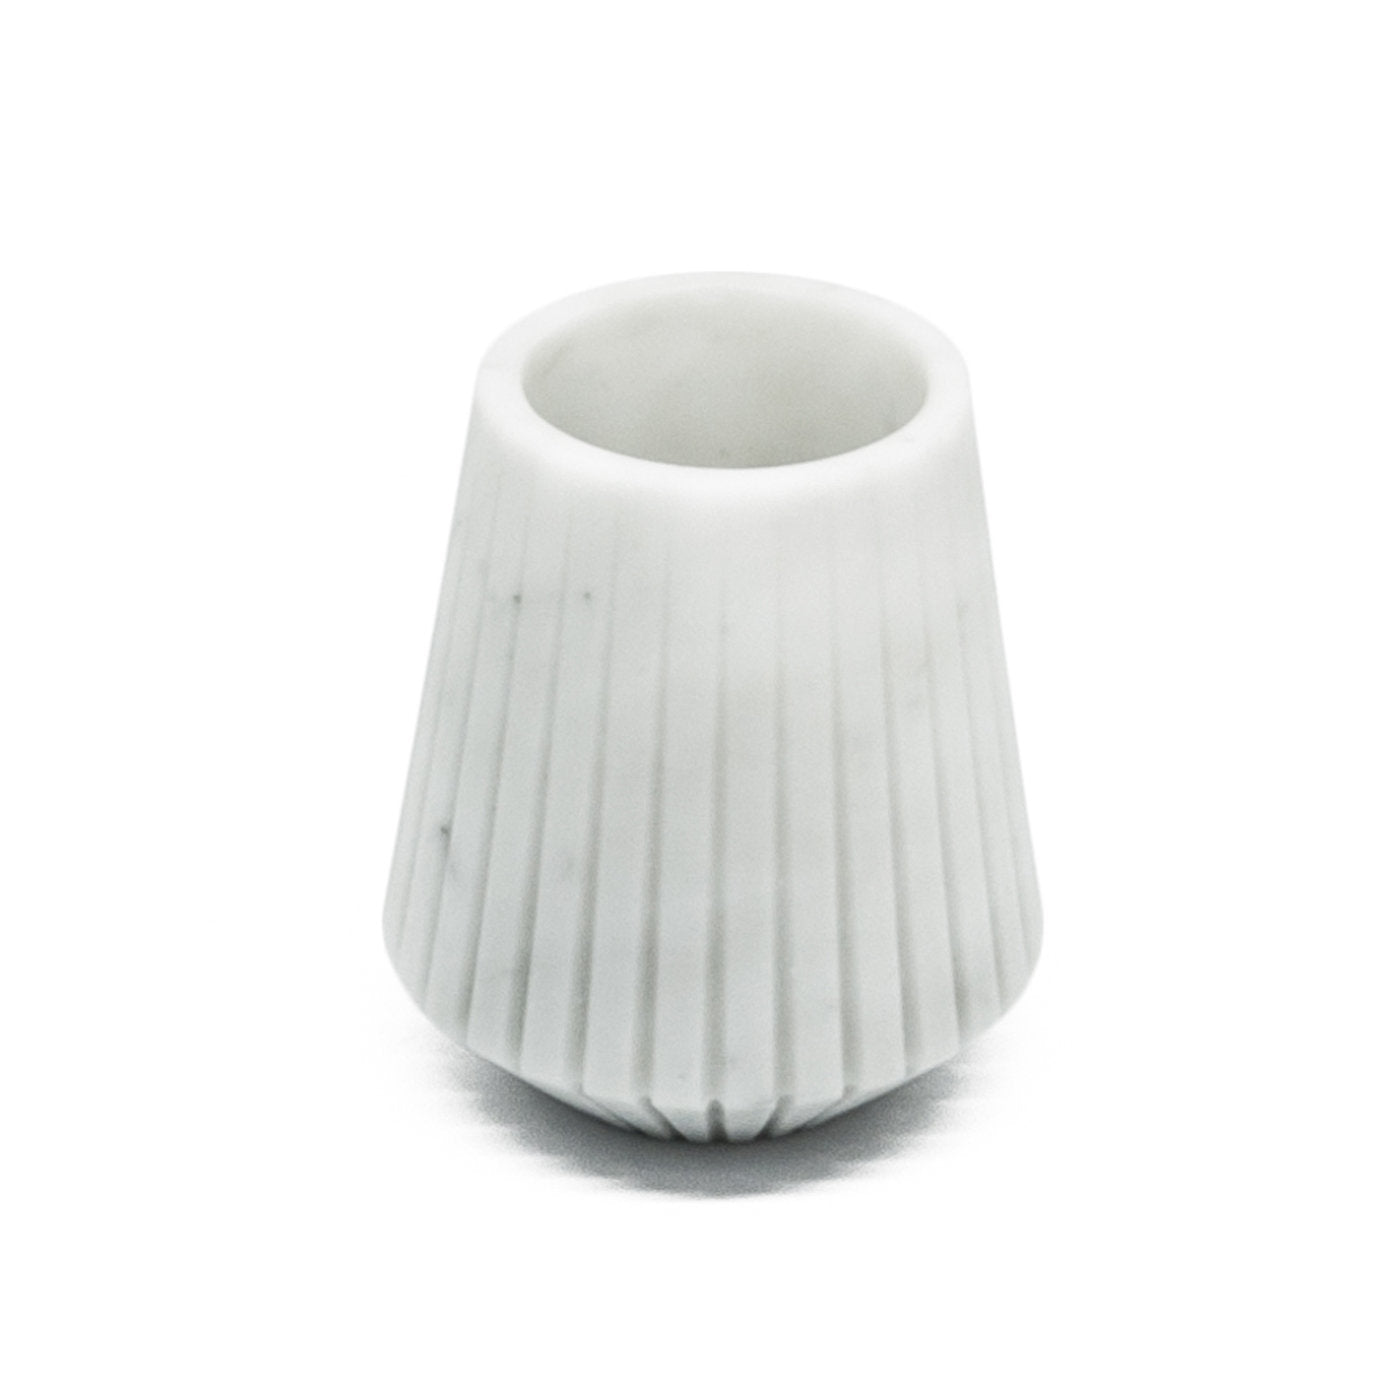 White Carrara Marble Low Vase by Jacopo Simonetti - Alternative view 2